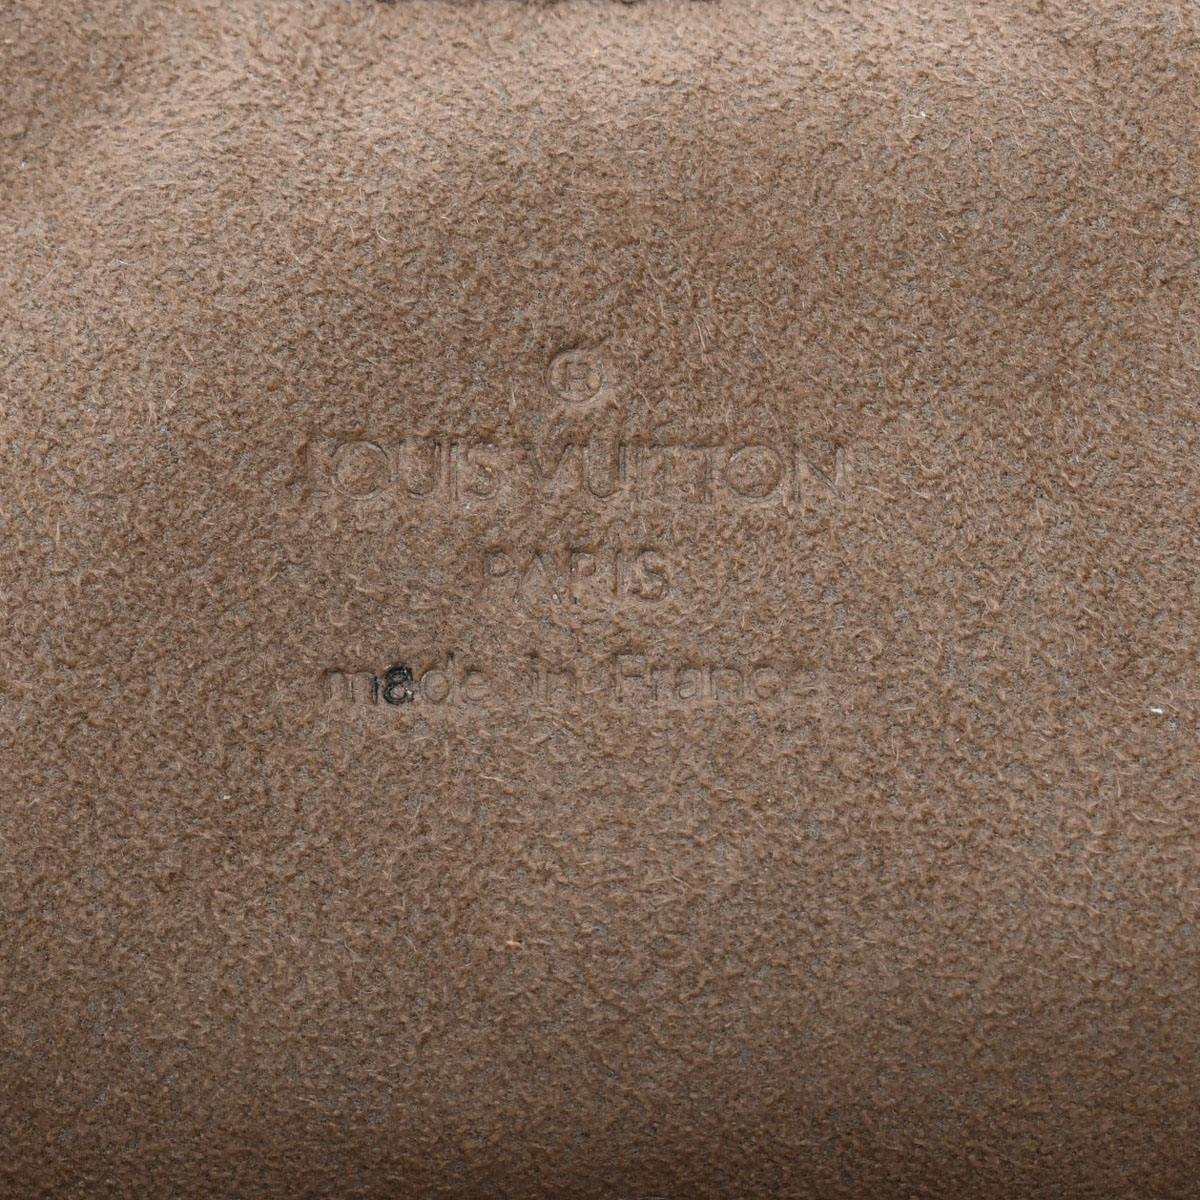 ルイ ヴィトン LOUIS VUITTON M40124 TH0087 レディース ハンドバッグ モノグラムマルチカラー ノワール モノグラム・マルチカラー・キャンバス